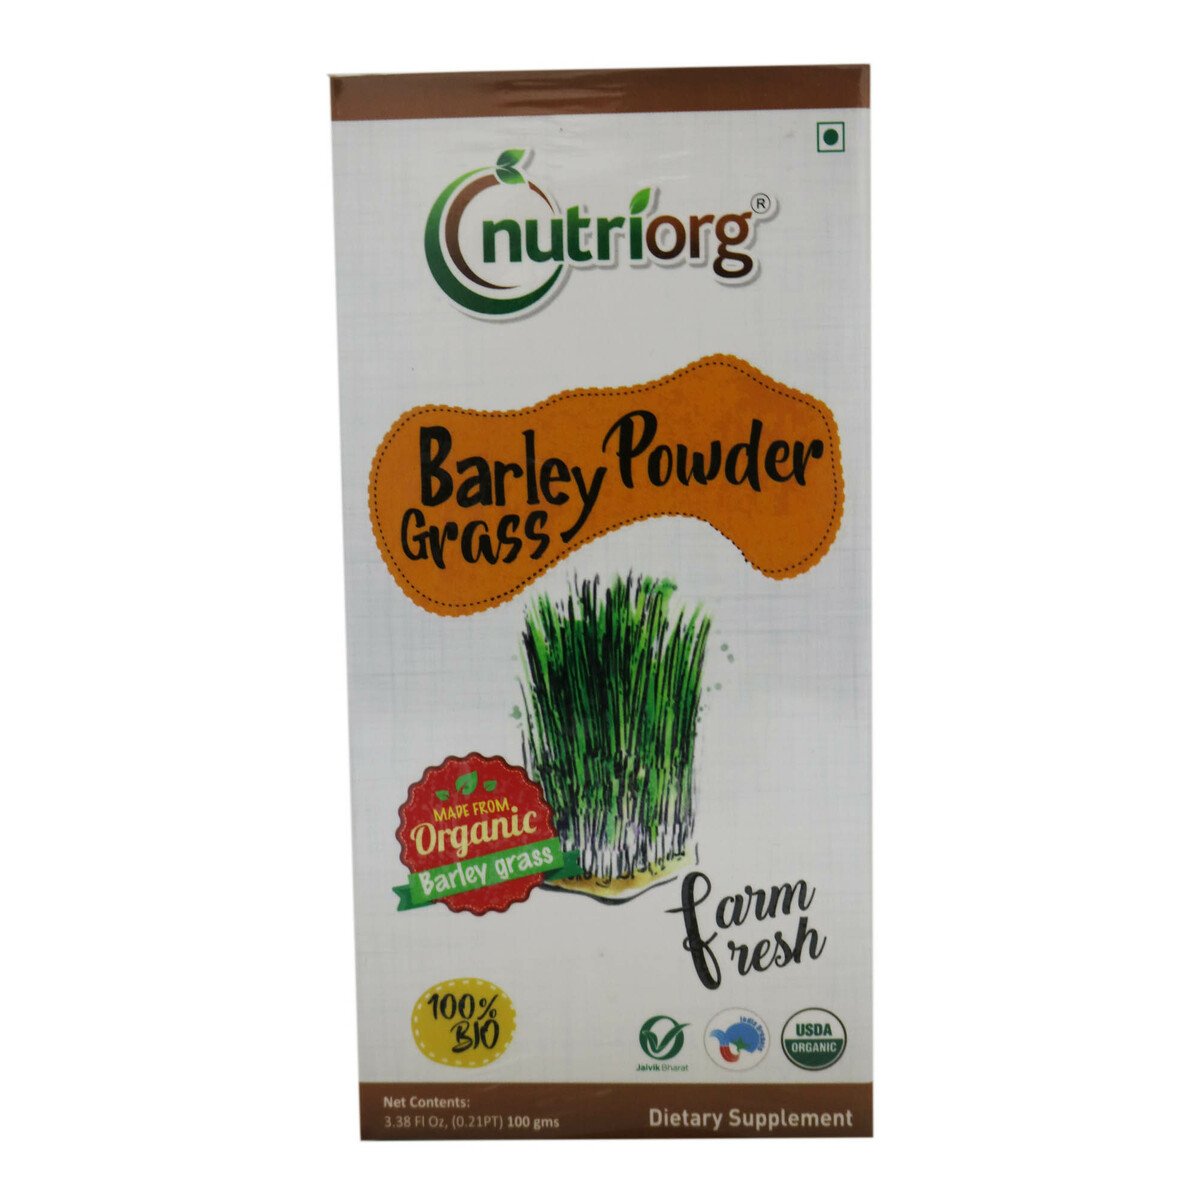 Nutrigo Original Barley Grass Powder 100g